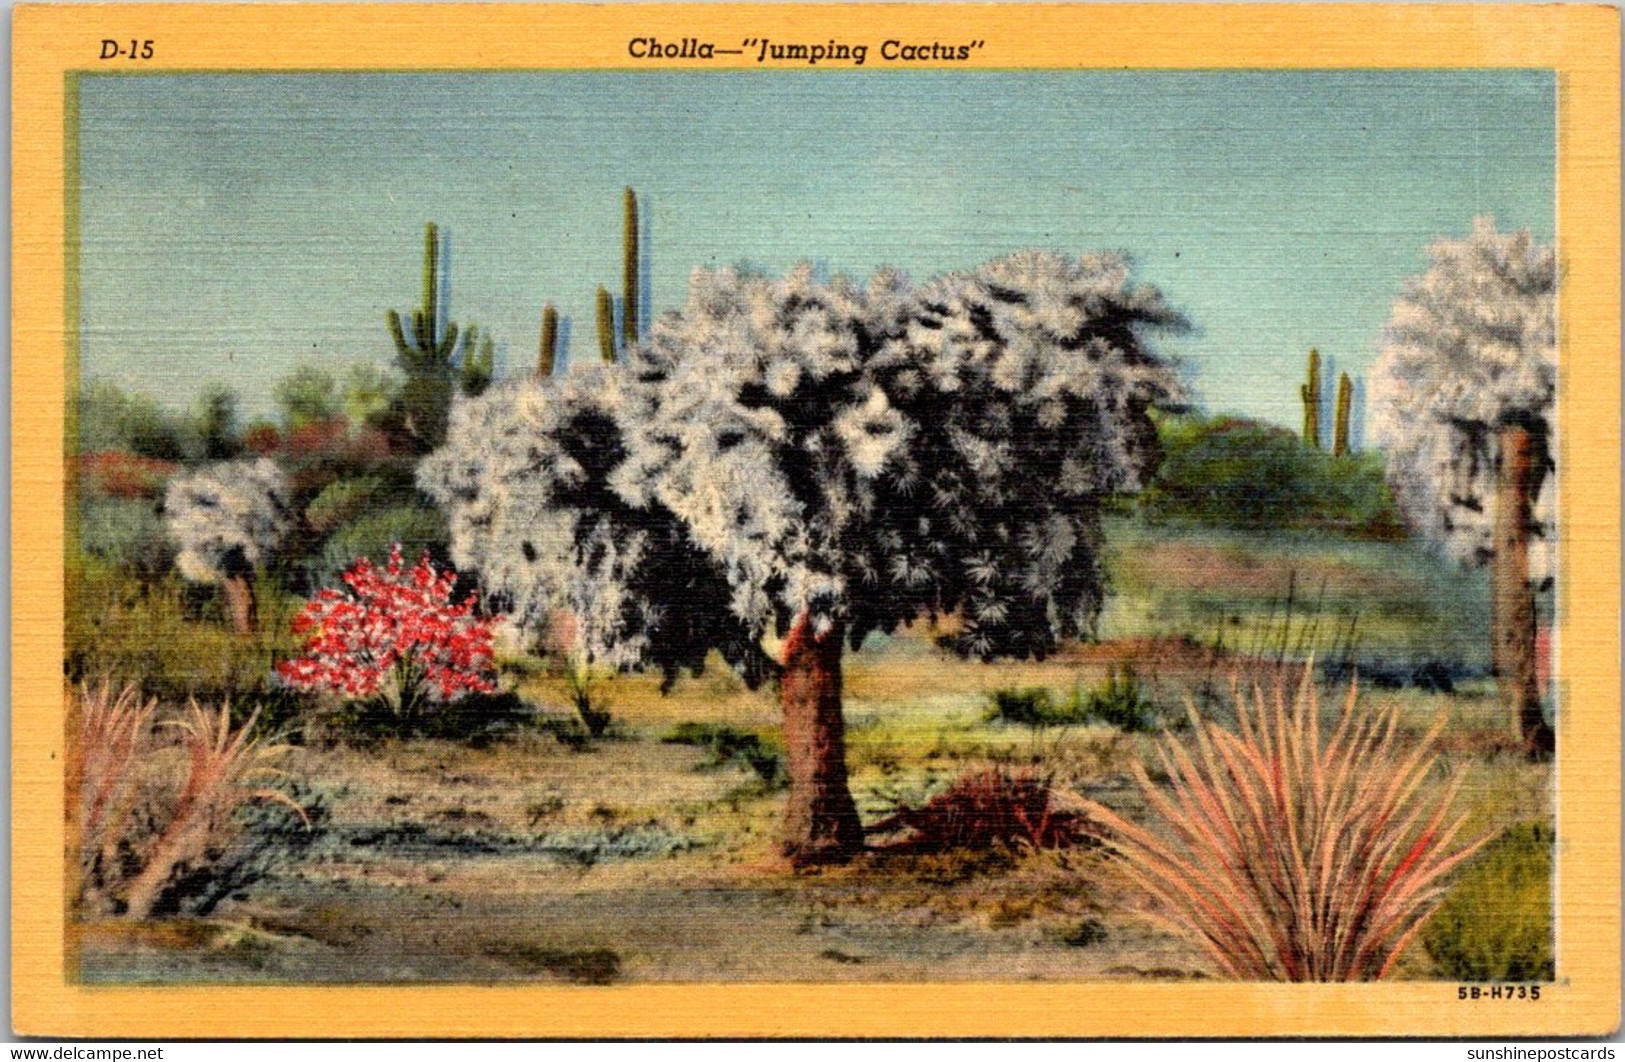 Cactus Cholla Cactus "Jumping Cactus" Curteich - Cactusses